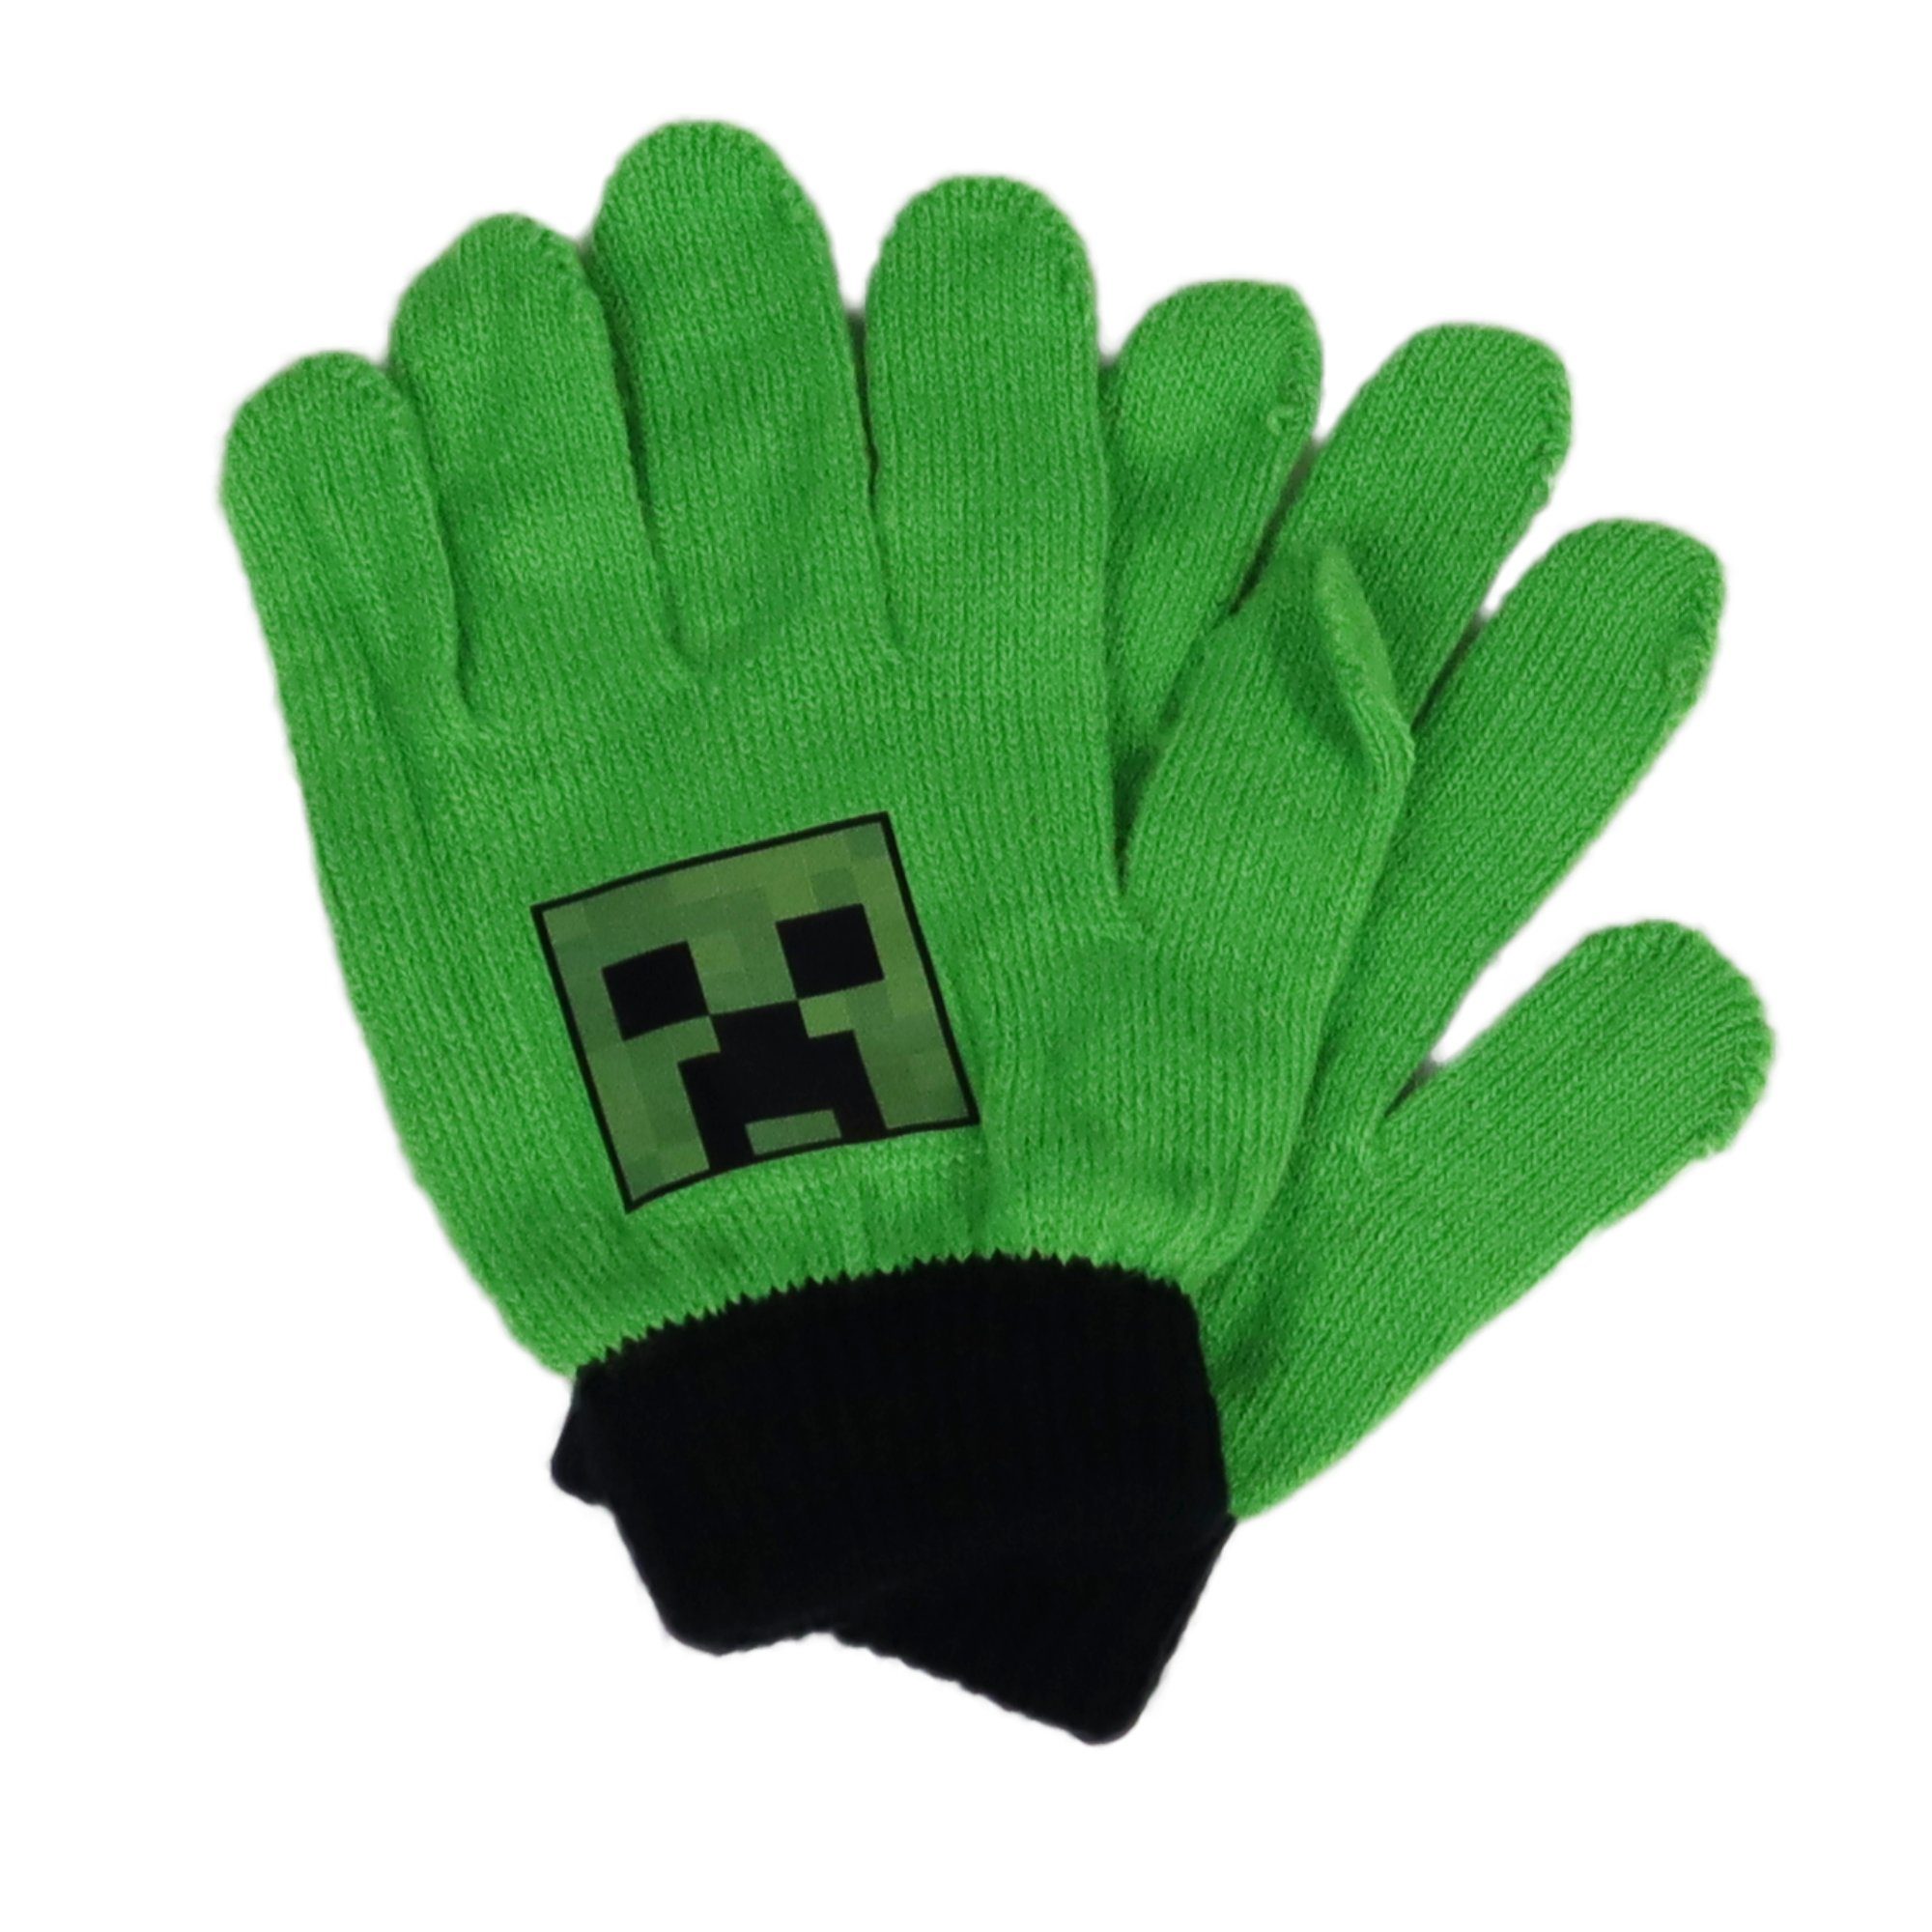 Minecraft Multisporthandschuhe 10 Kinder Handschuhe in Jahre, bis Schwarz, oder Grün vom Finger Minecraft Motiv Creeper Creeper Einheitsgröße ca